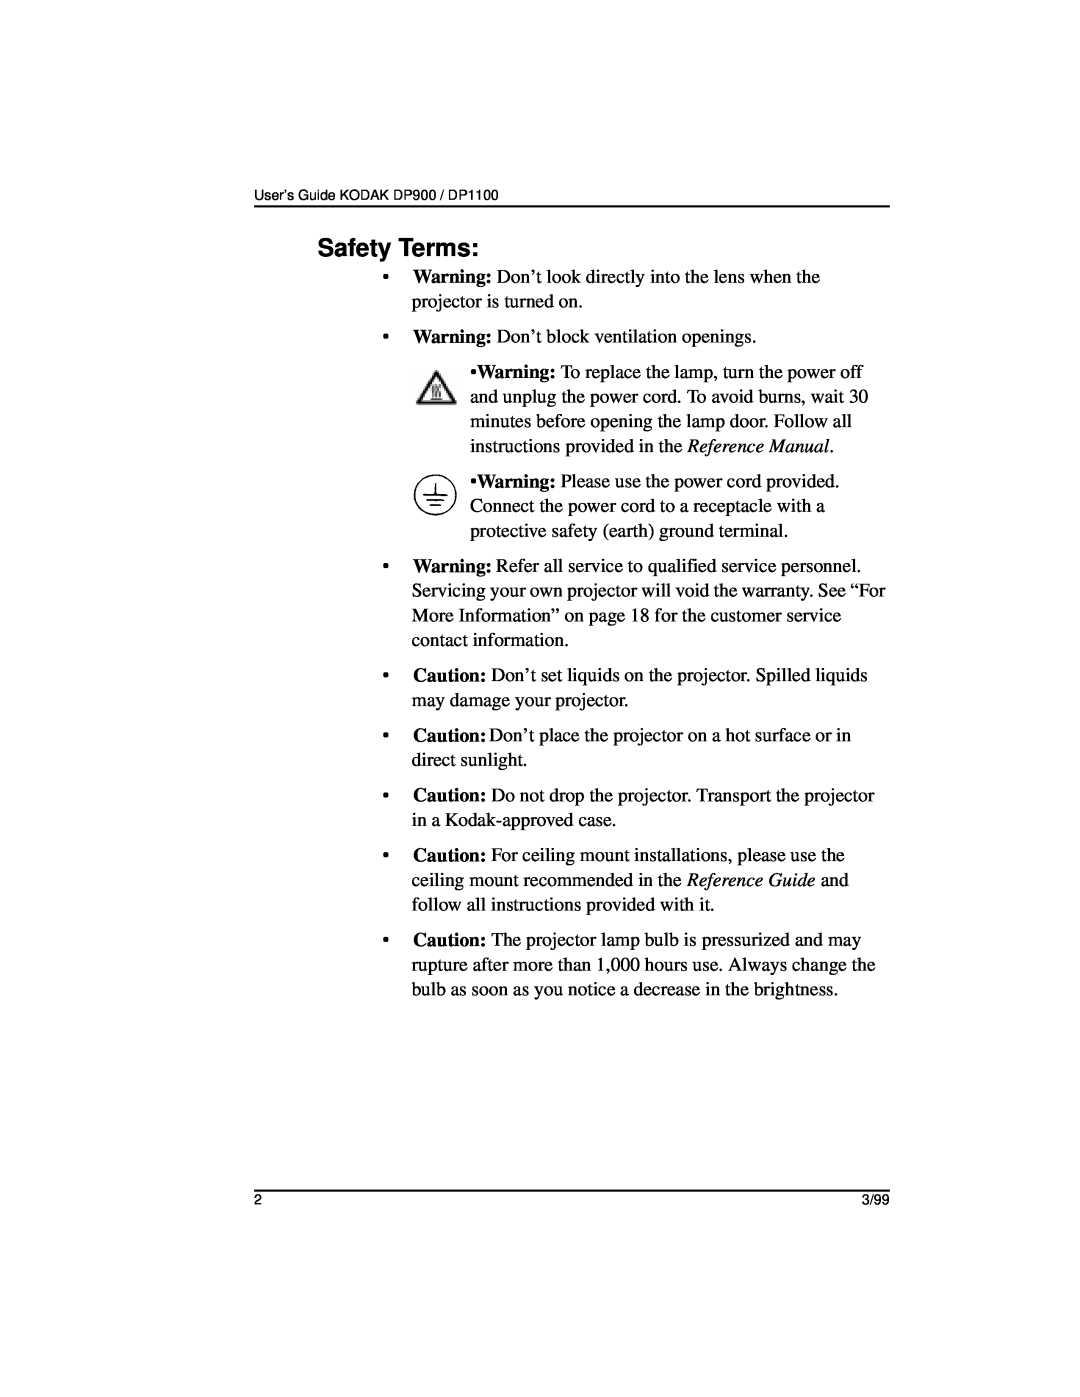 Kodak DP900, DP1100 manual Safety Terms 